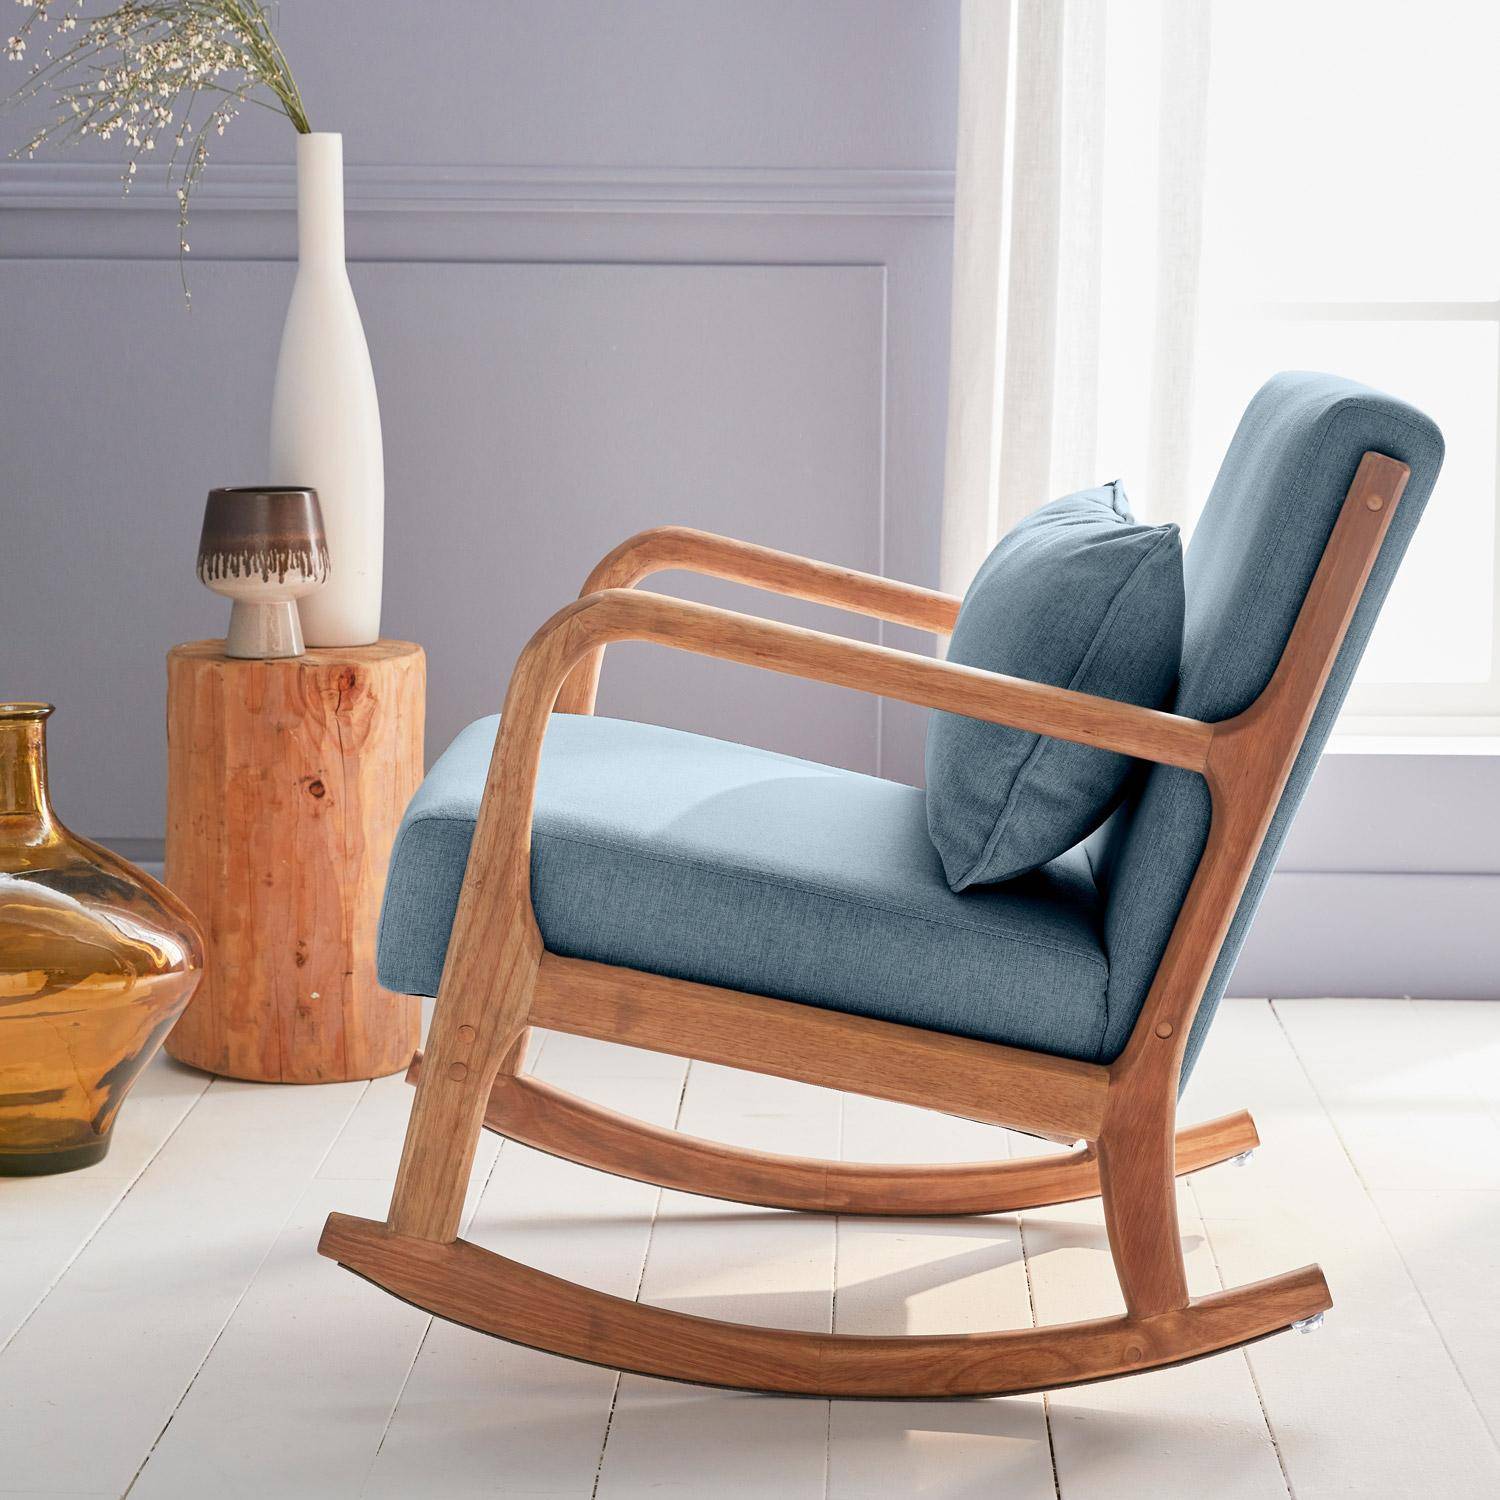 Fauteuil à bascule design en bois et tissu, 1 place, rocking chair scandinave, bleu Photo2